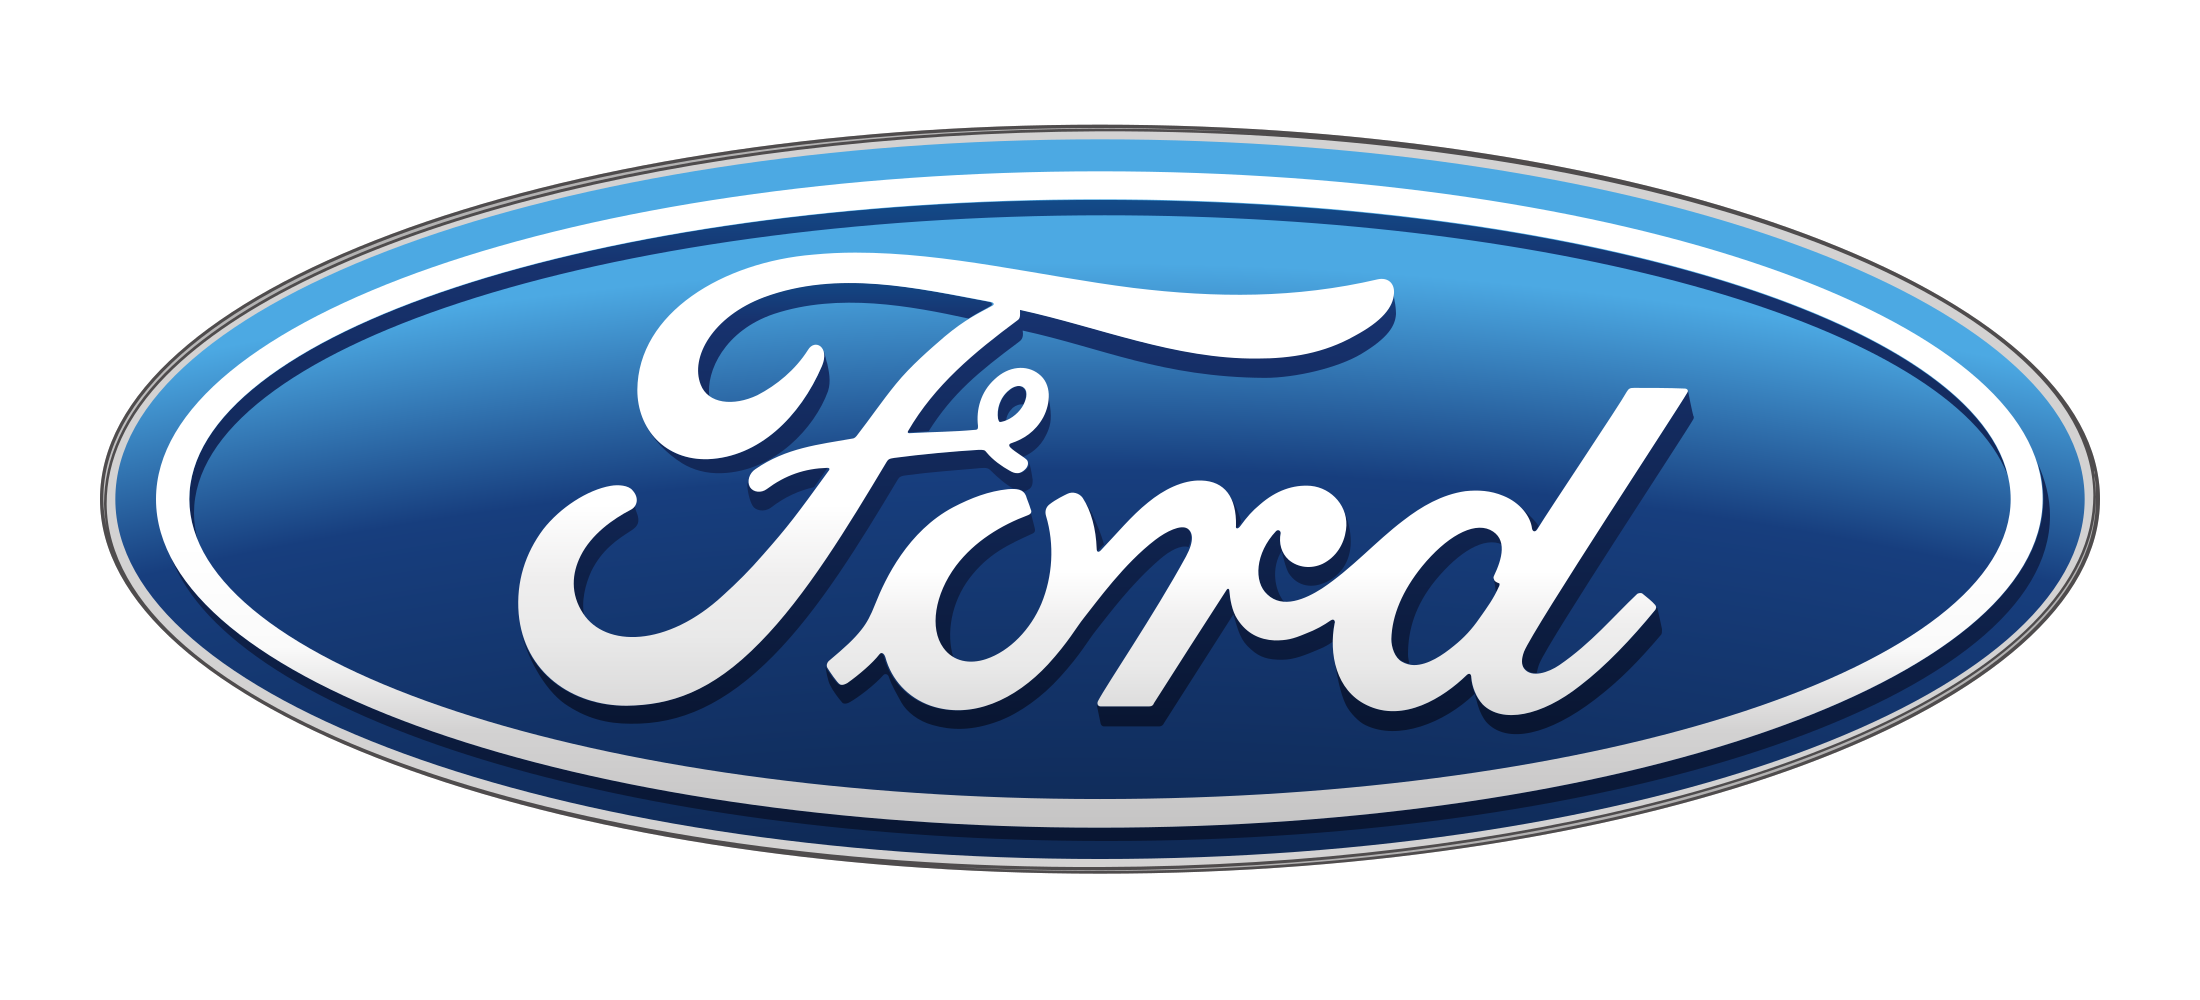 Ford Logo, Car Ford Motor Com